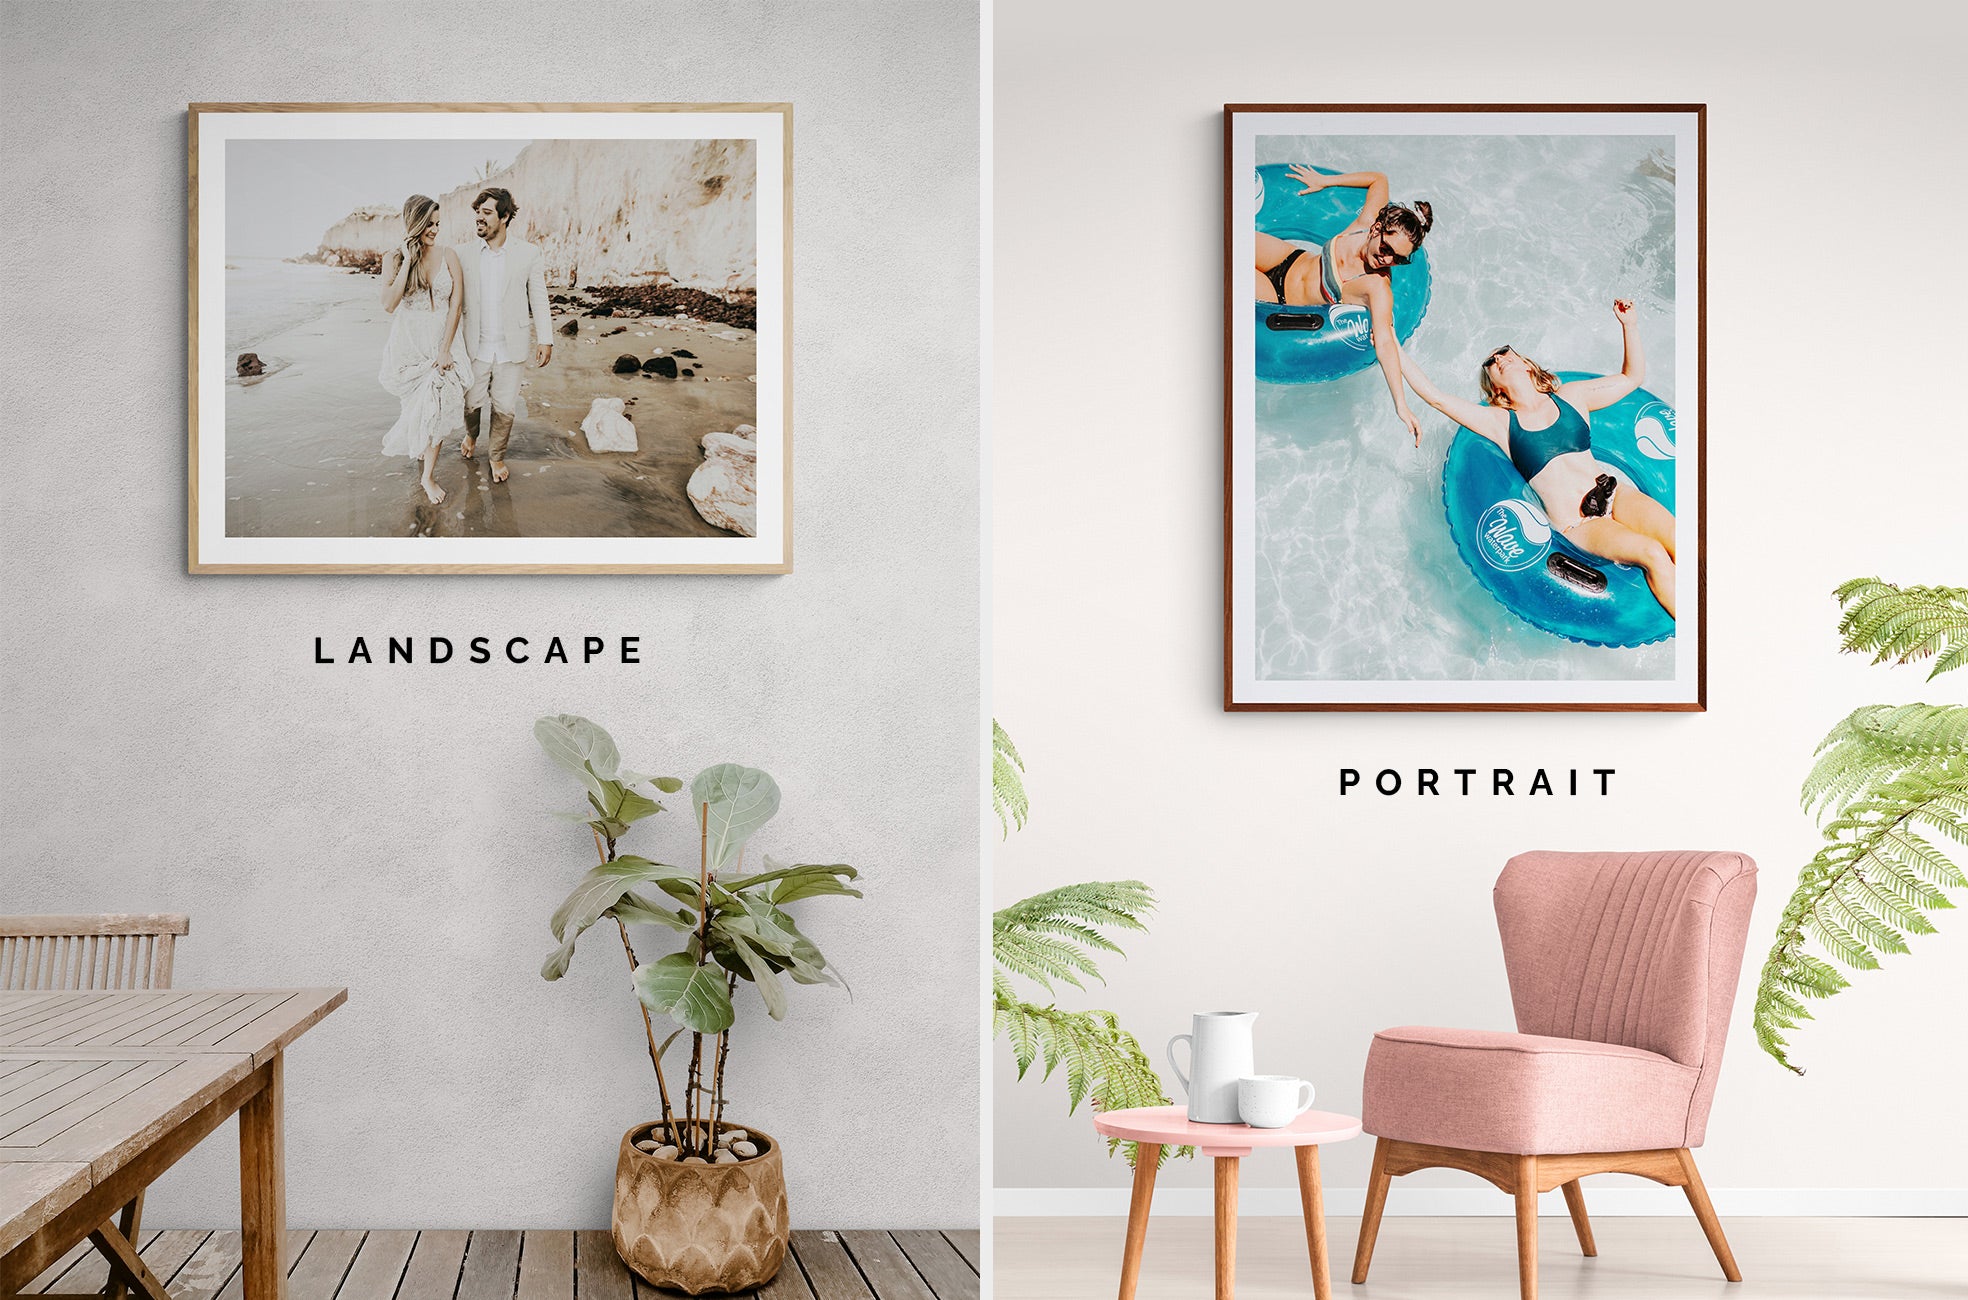 Landscape or portrait framing options